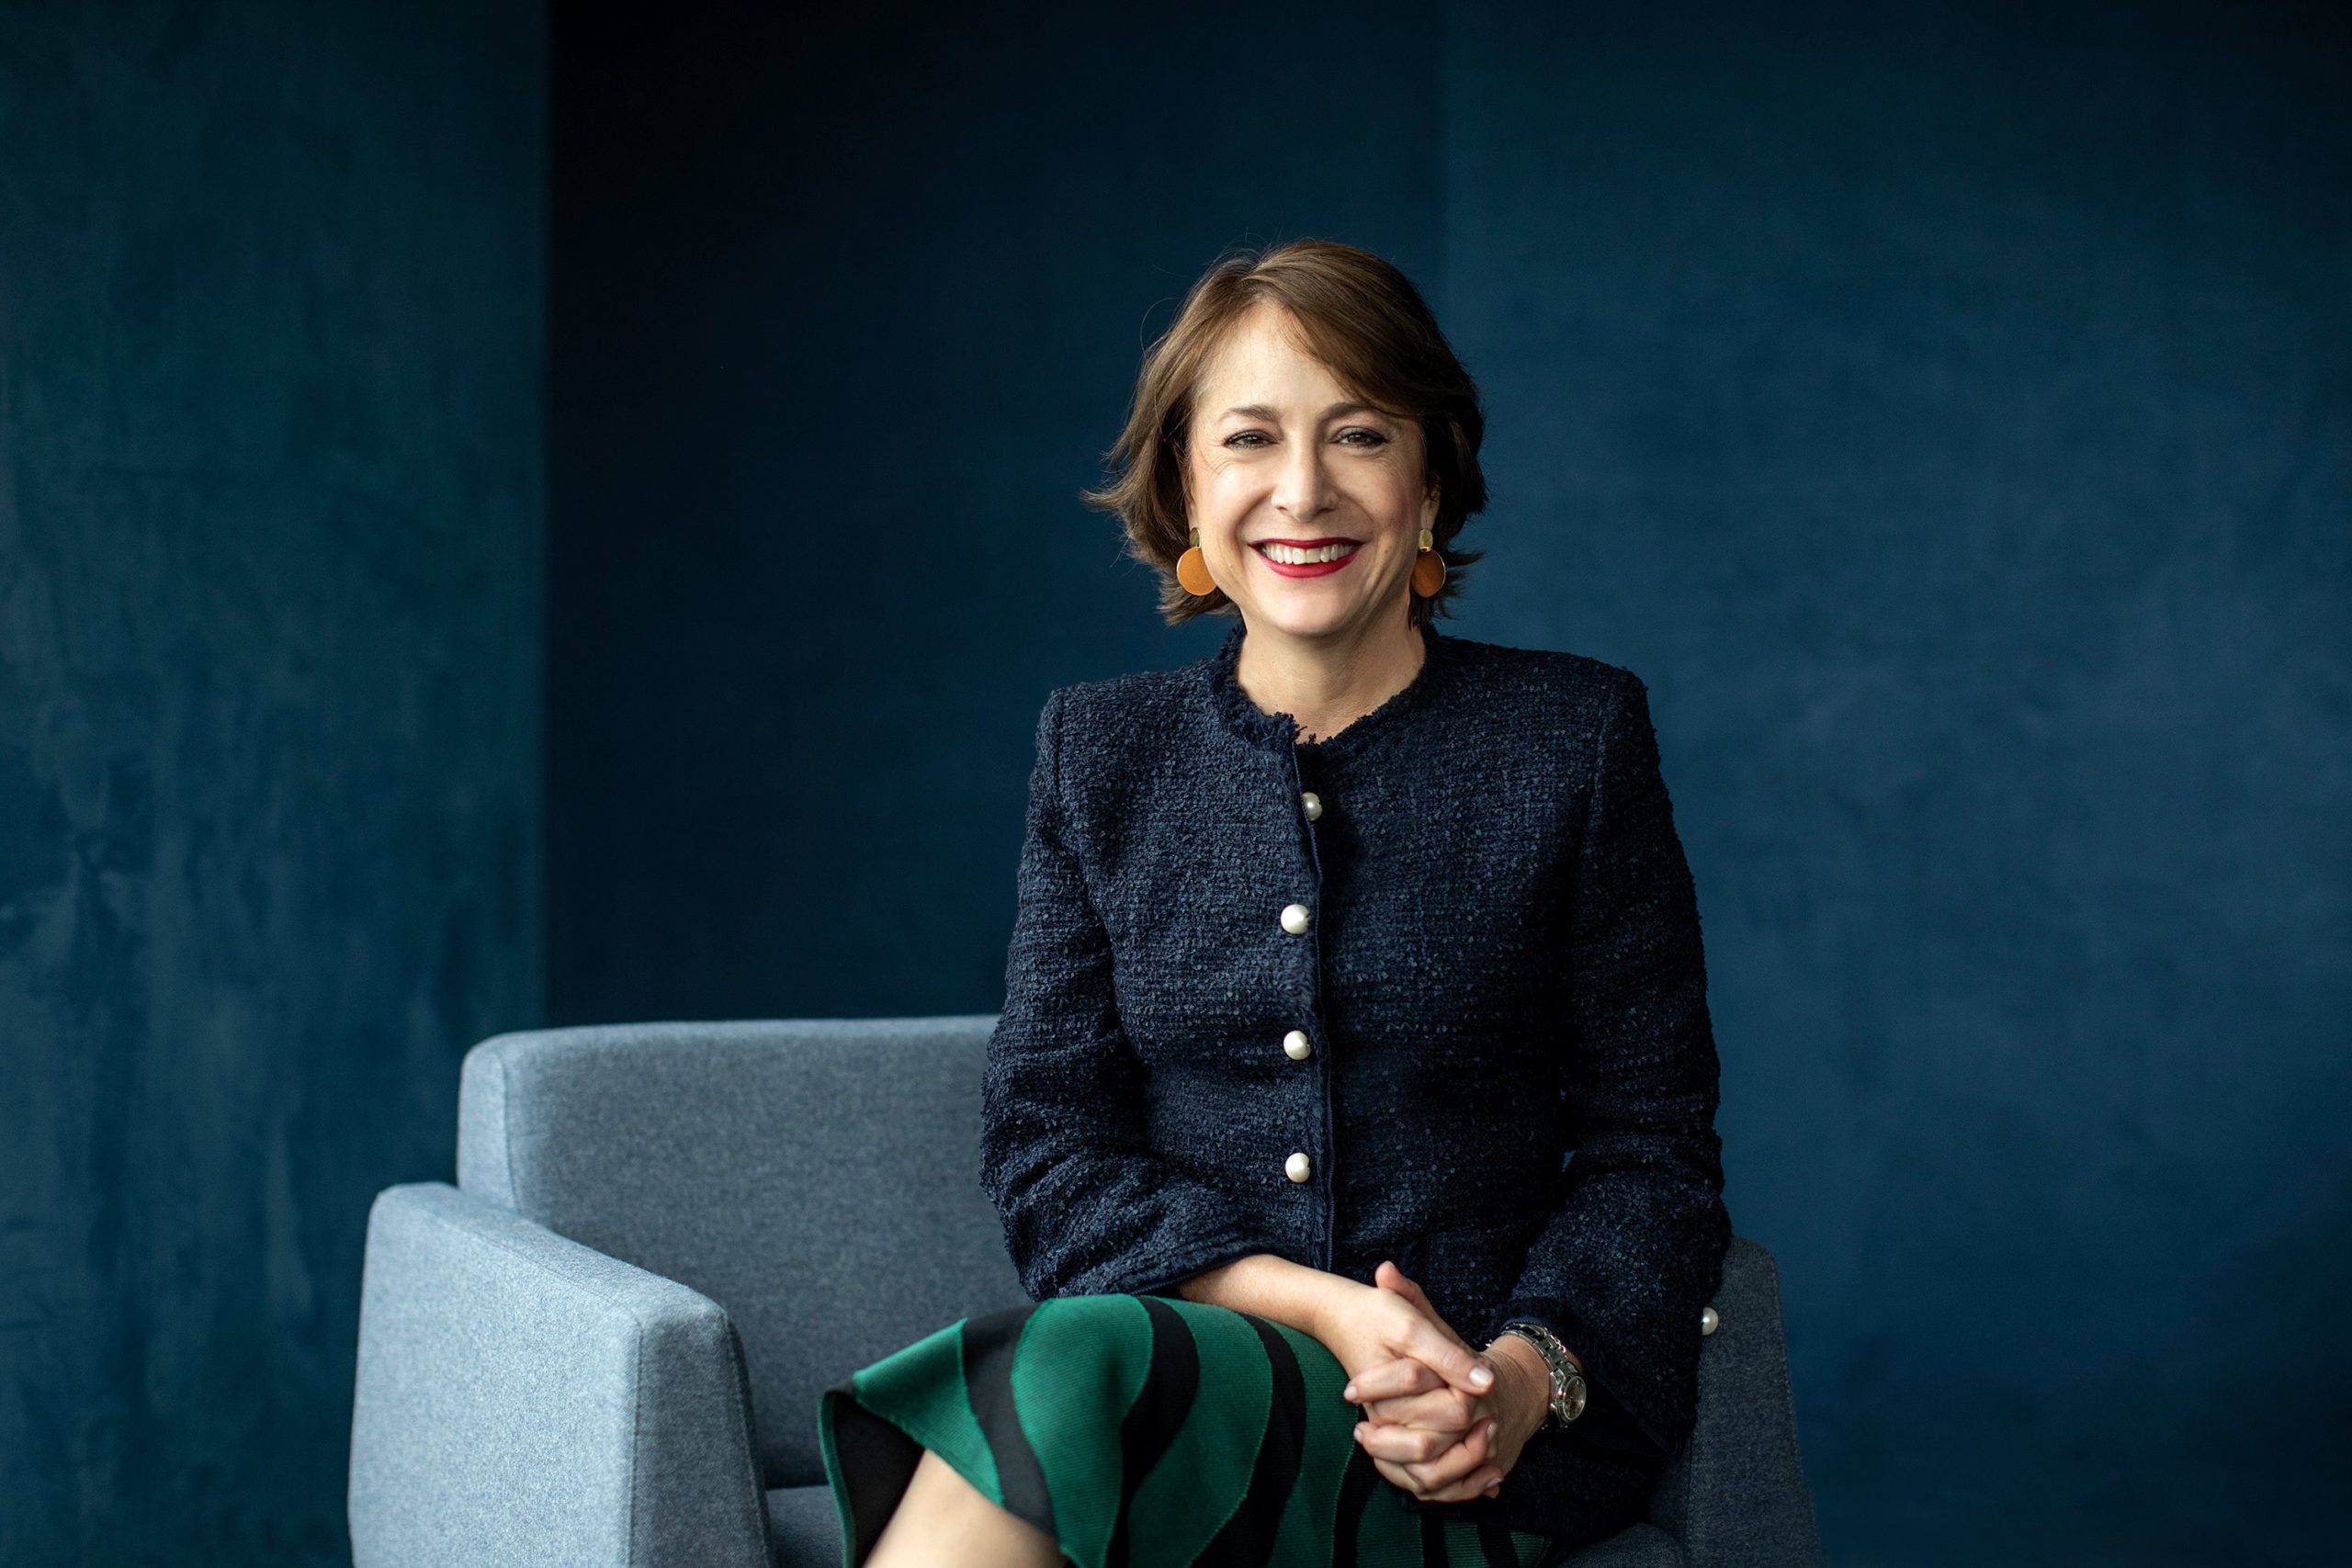 Paula Santilli, CEO de Pepsico Latinoamérica, Entre las 100 mujeres más poderosas de Forbes